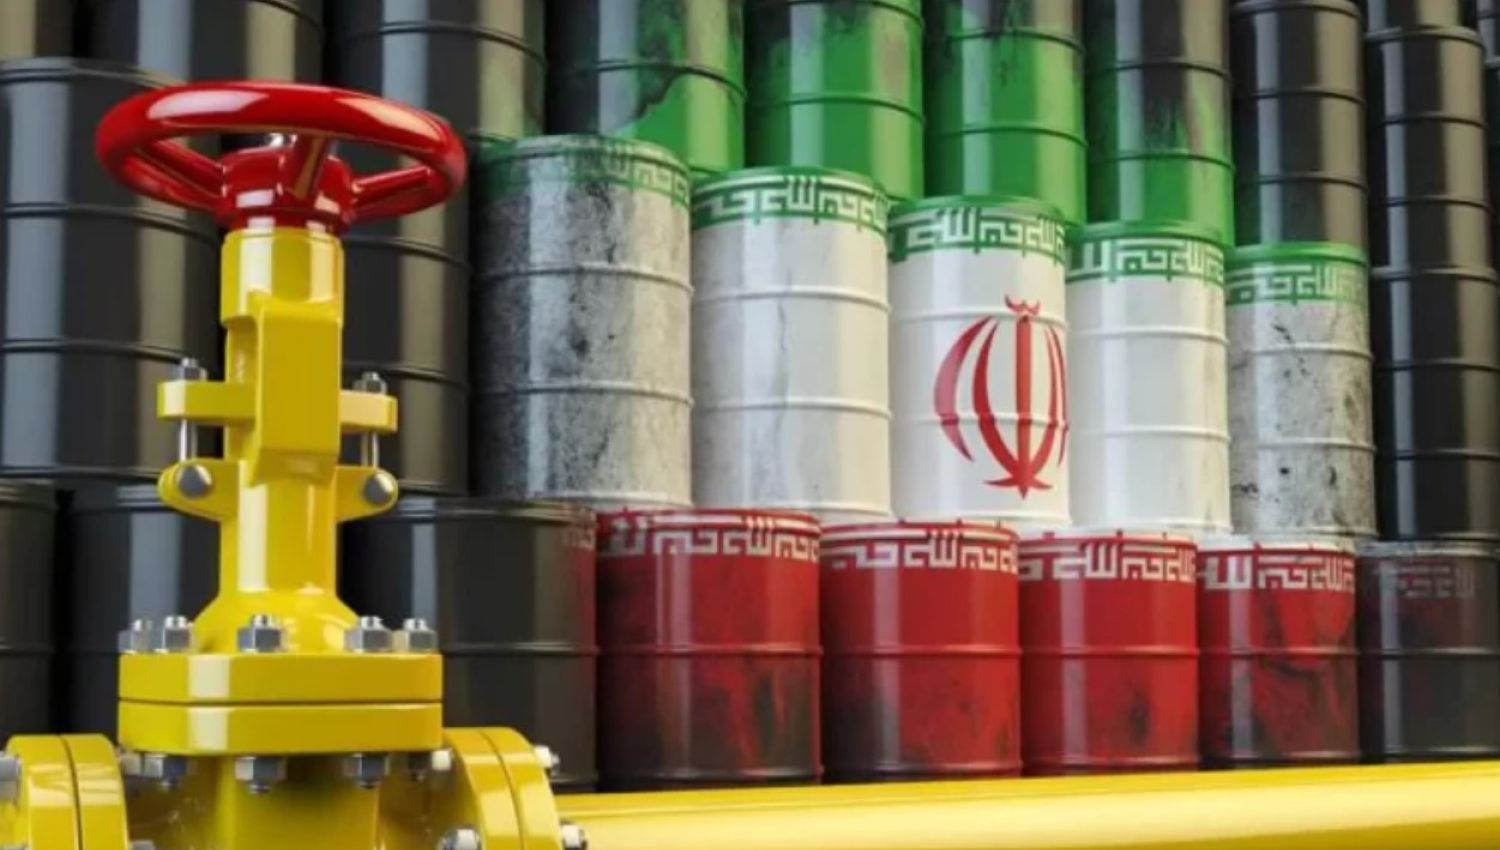 هآرتس: العالم بانتظار النفط الإيراني في الأسواق 